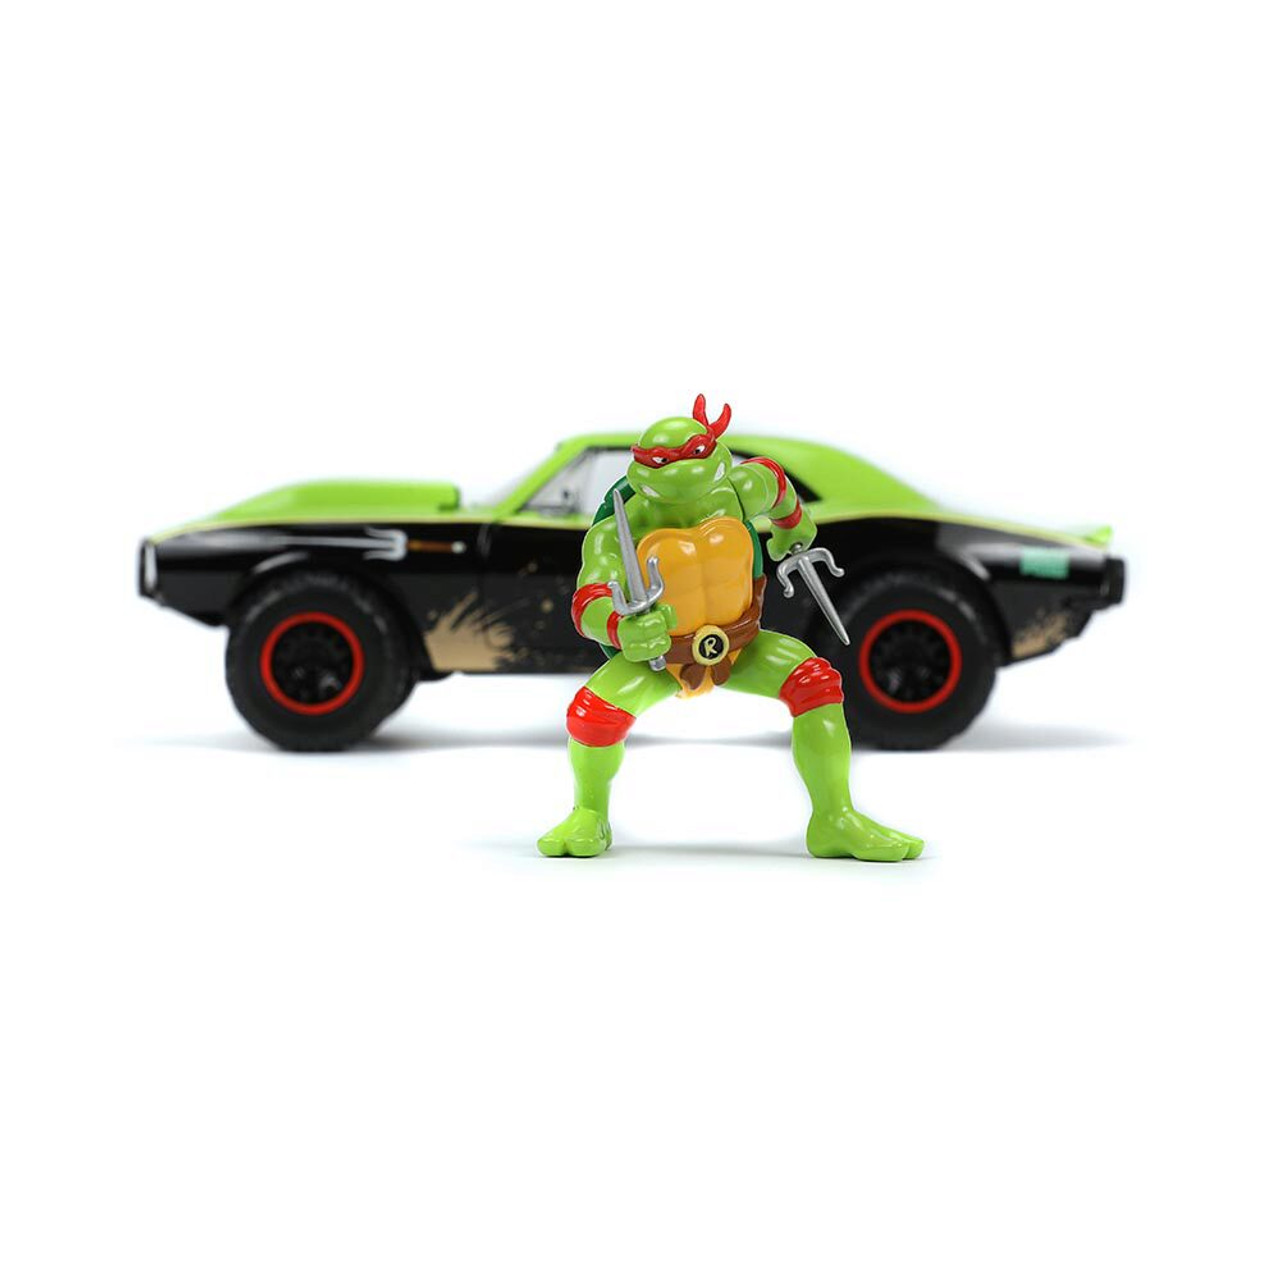 1967 Chevrolet Teenage Mutant Ninja Turtles Camaro with Raphael Figure